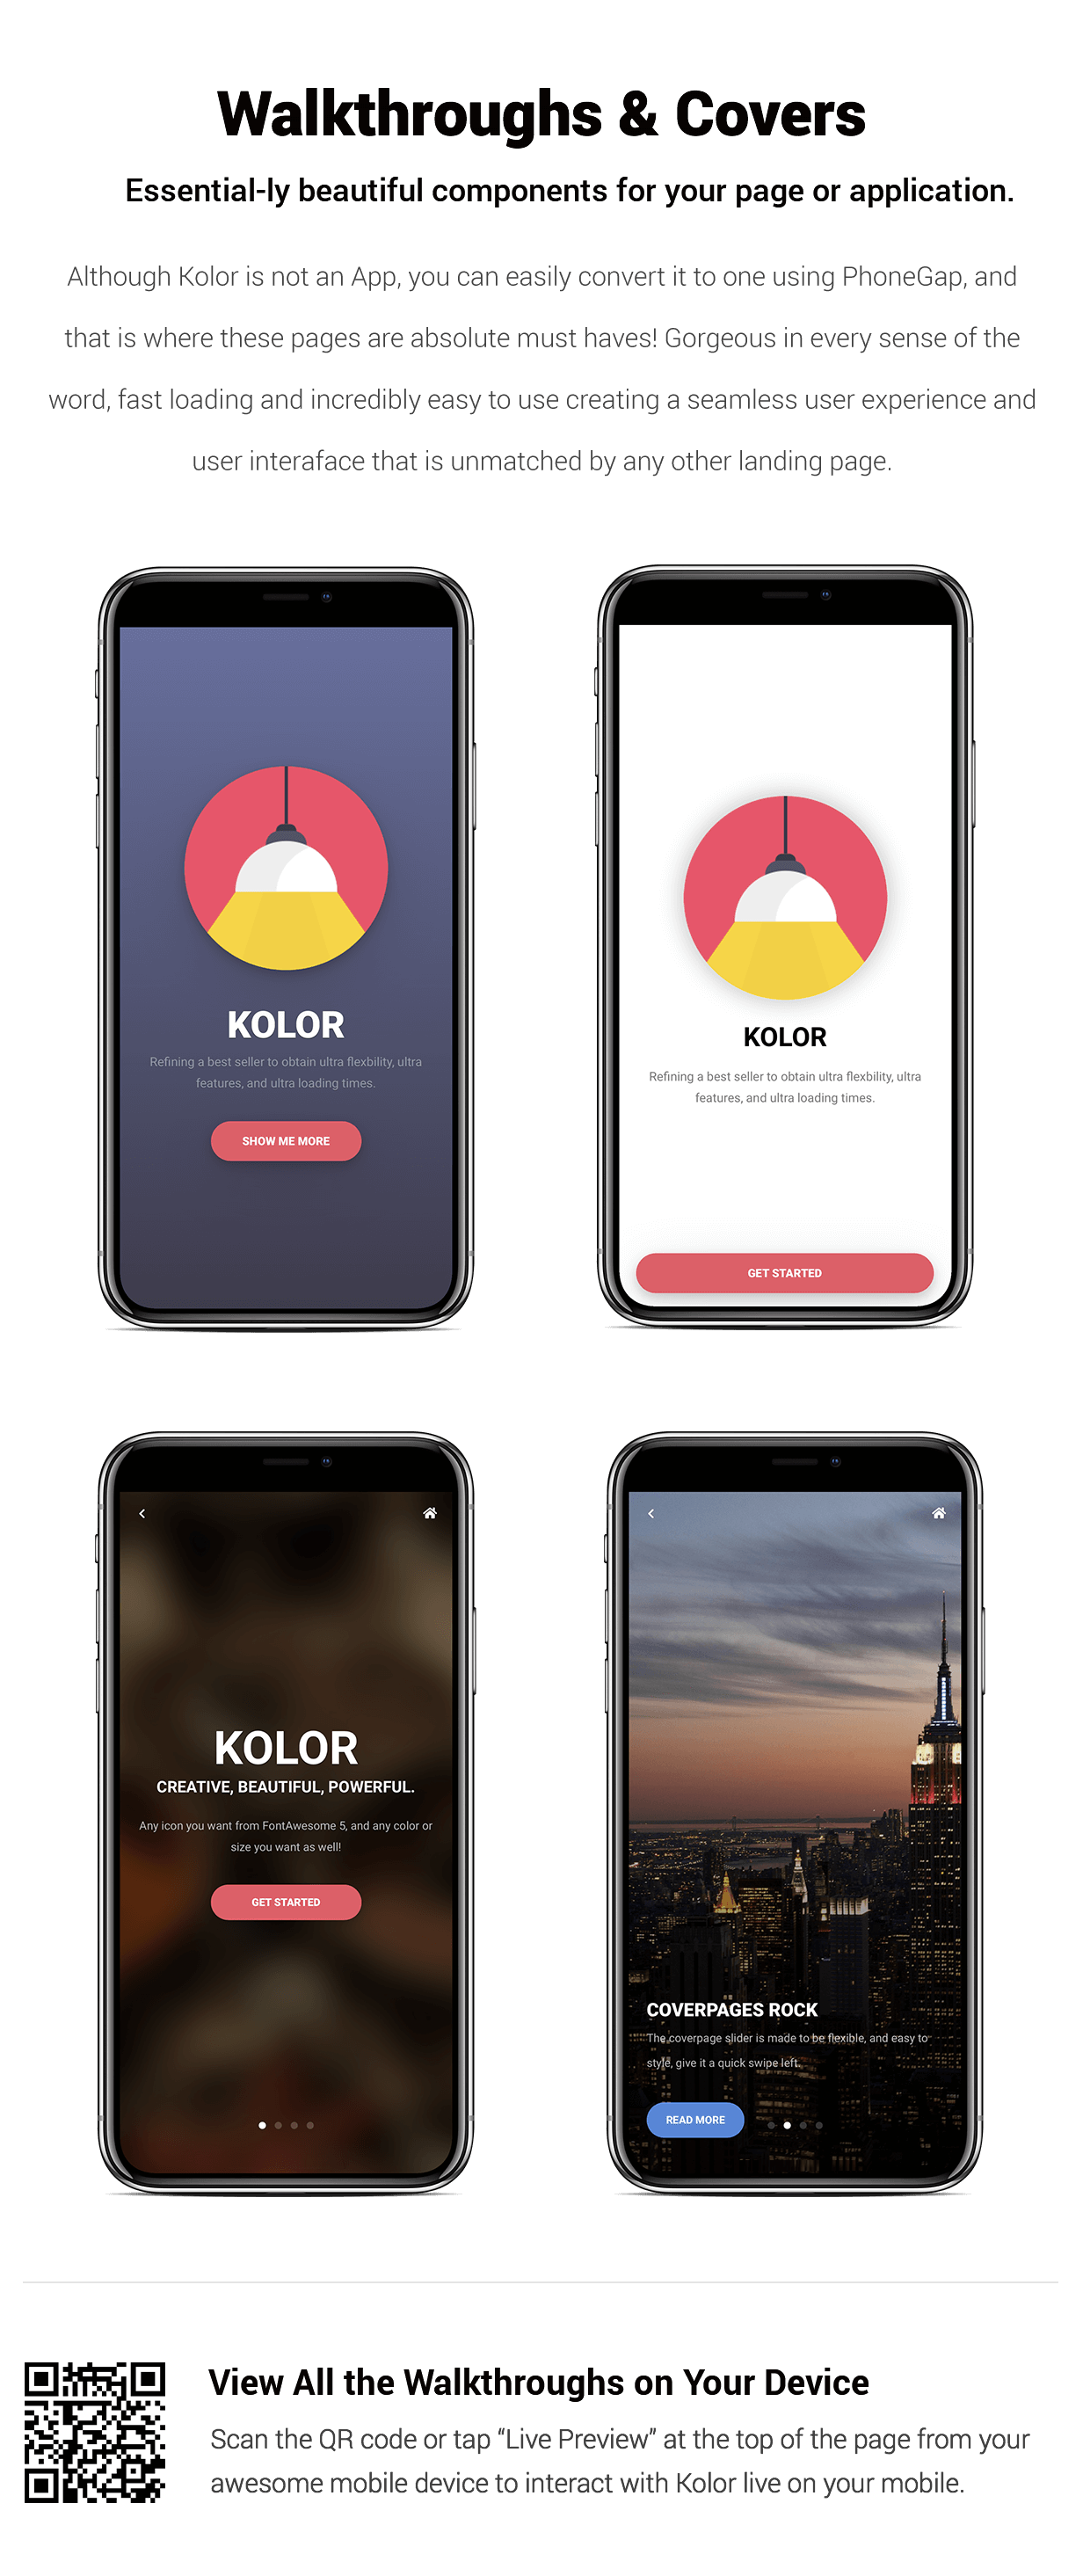 Kolor | PhoneGap & Cordova Mobile App - 18